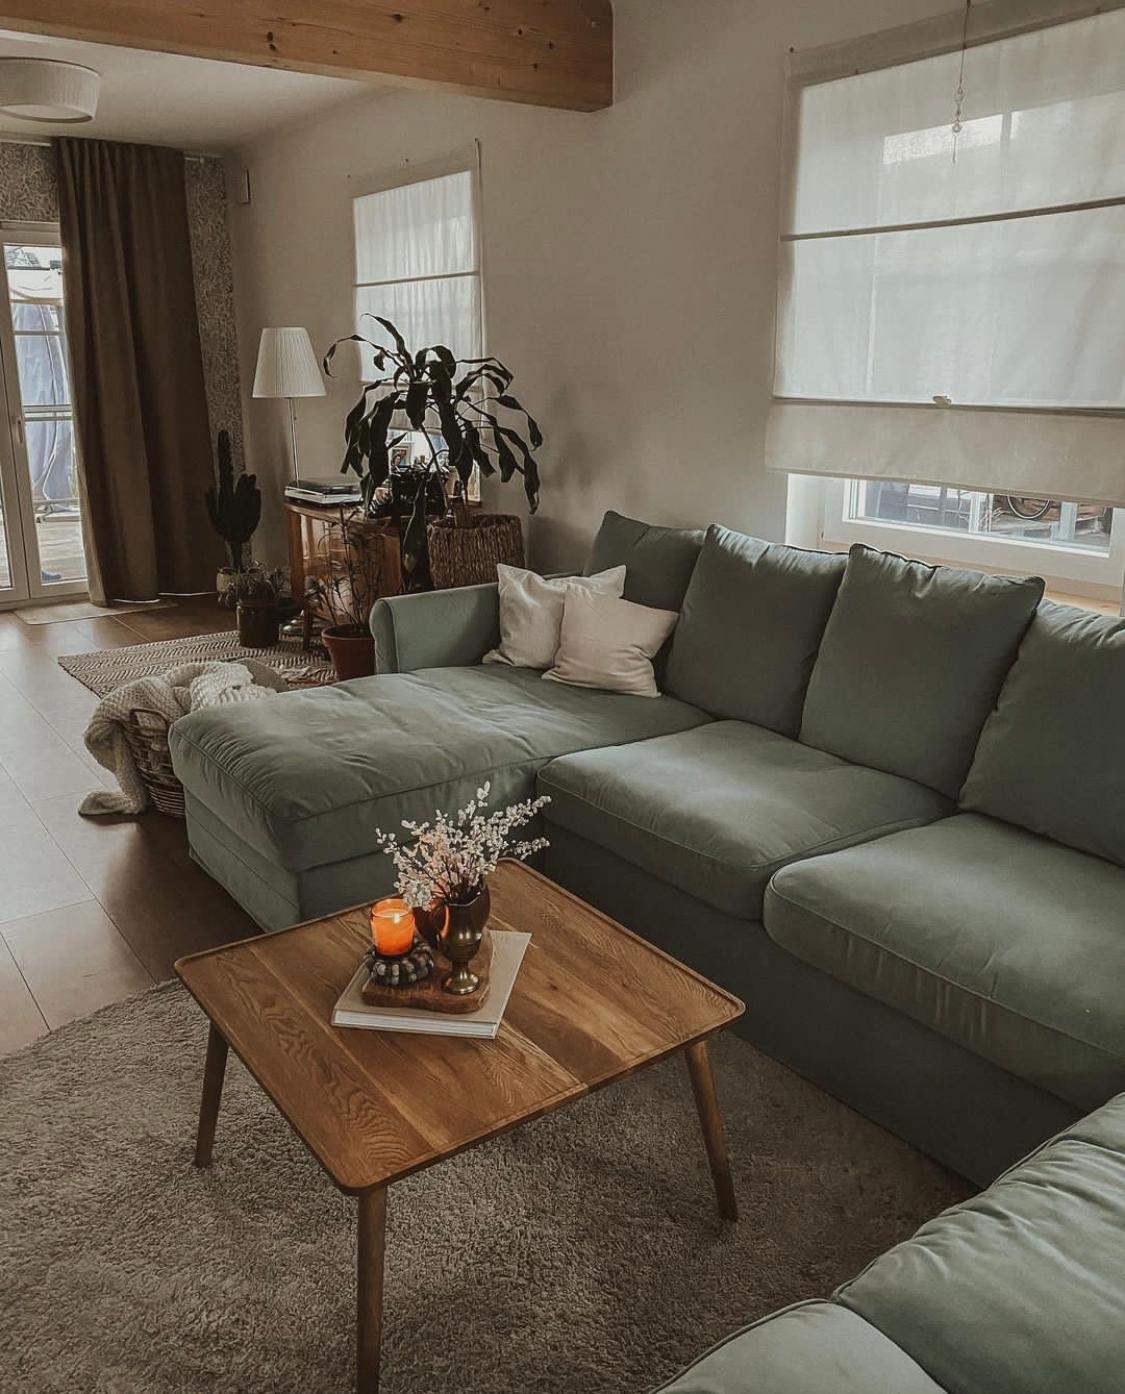 #wohnzimmer #sofaecke #couch #gemütlich #skandinavisch #couchliebt #couchstyle